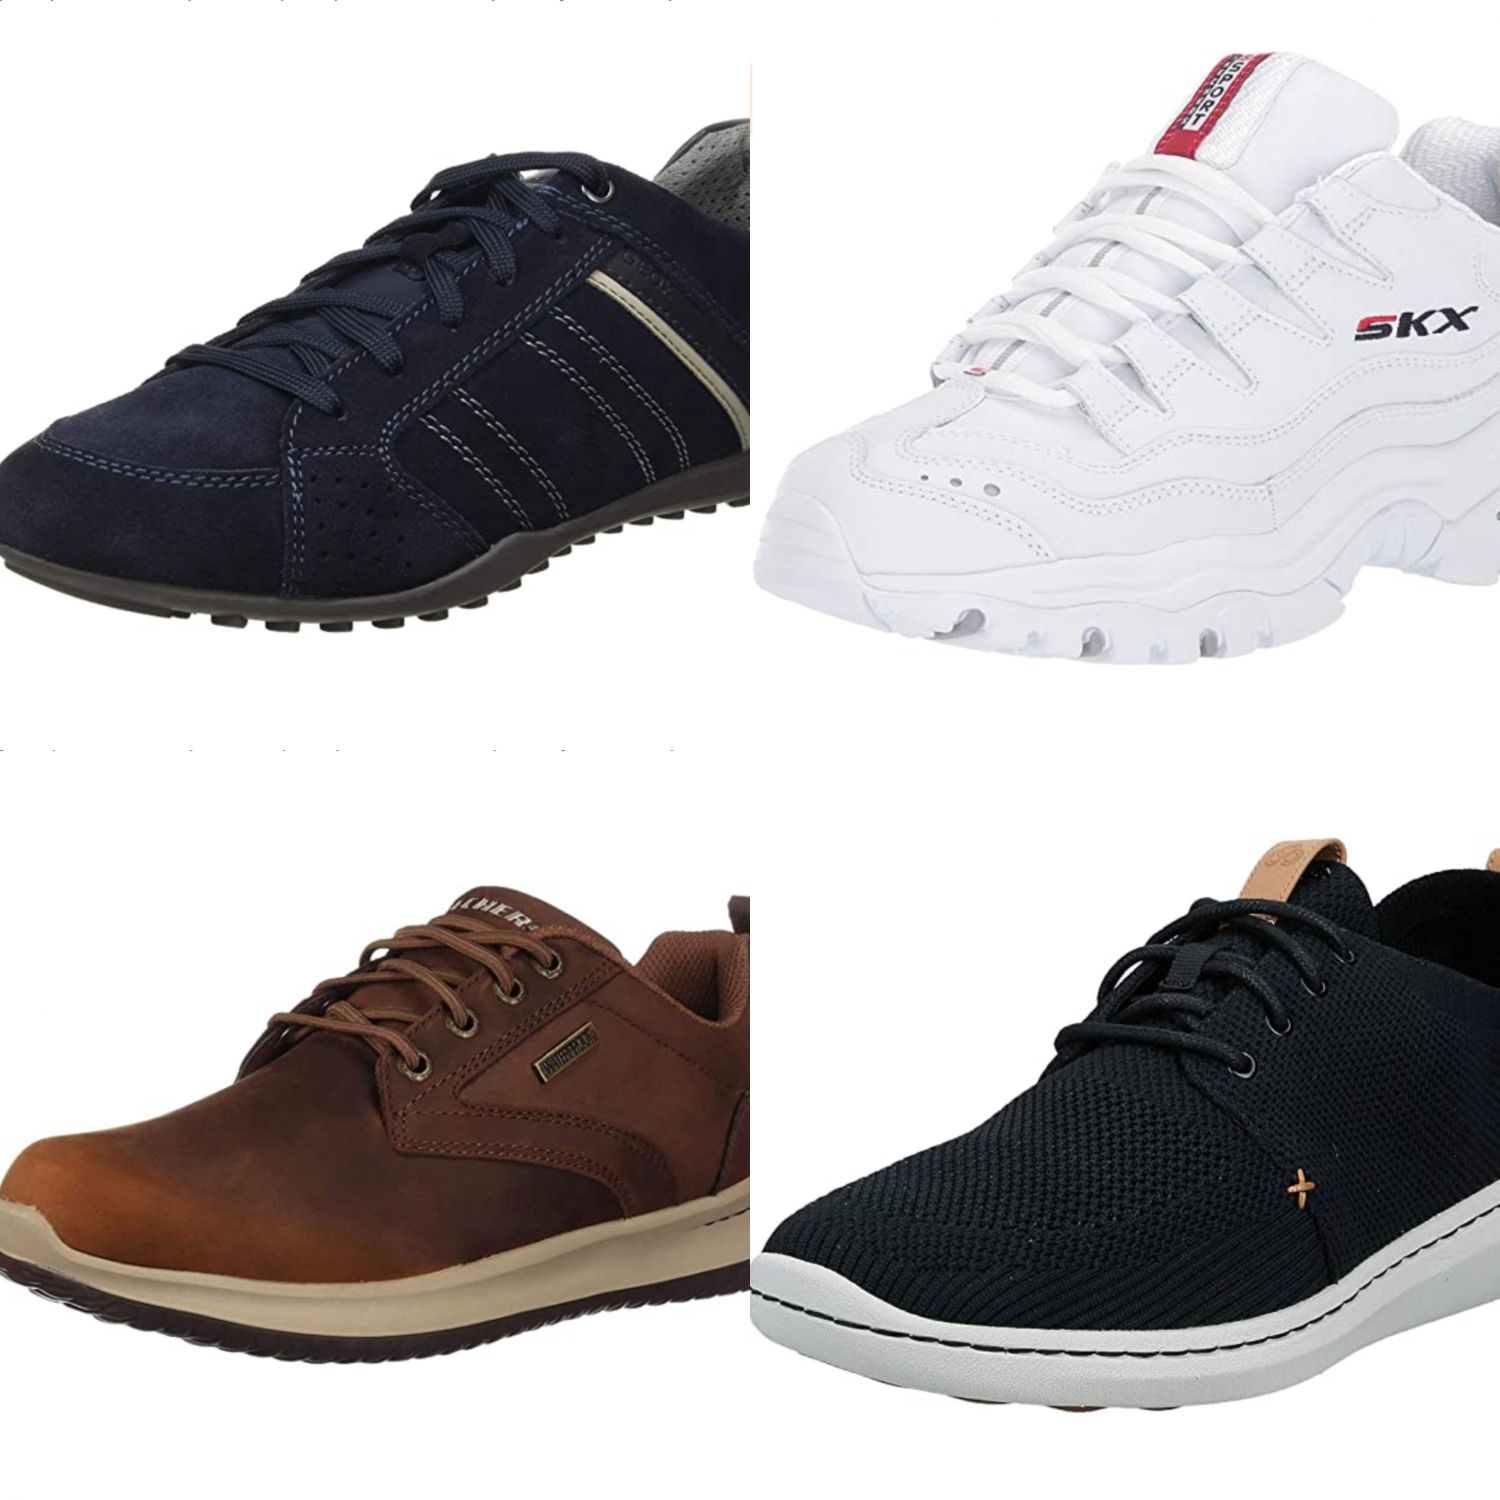 Geox, Skechers y Clarks: 8 ofertas en zapatos buenos cómodos de Amazon